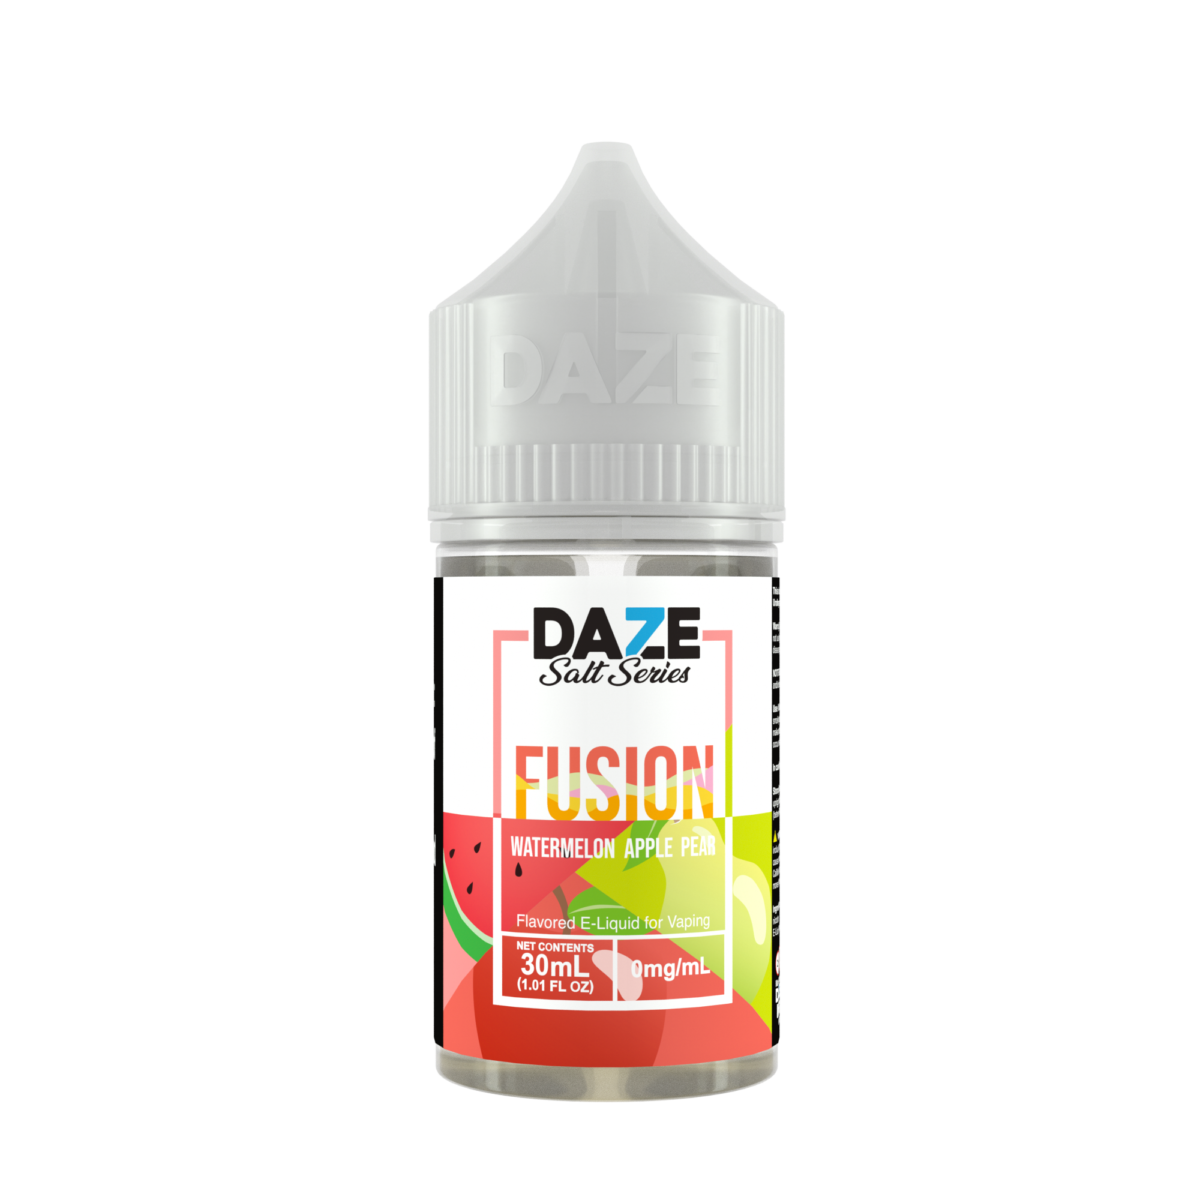 Watermelon Apple Pear by 7Daze Fusion Salt 30mL Bottle